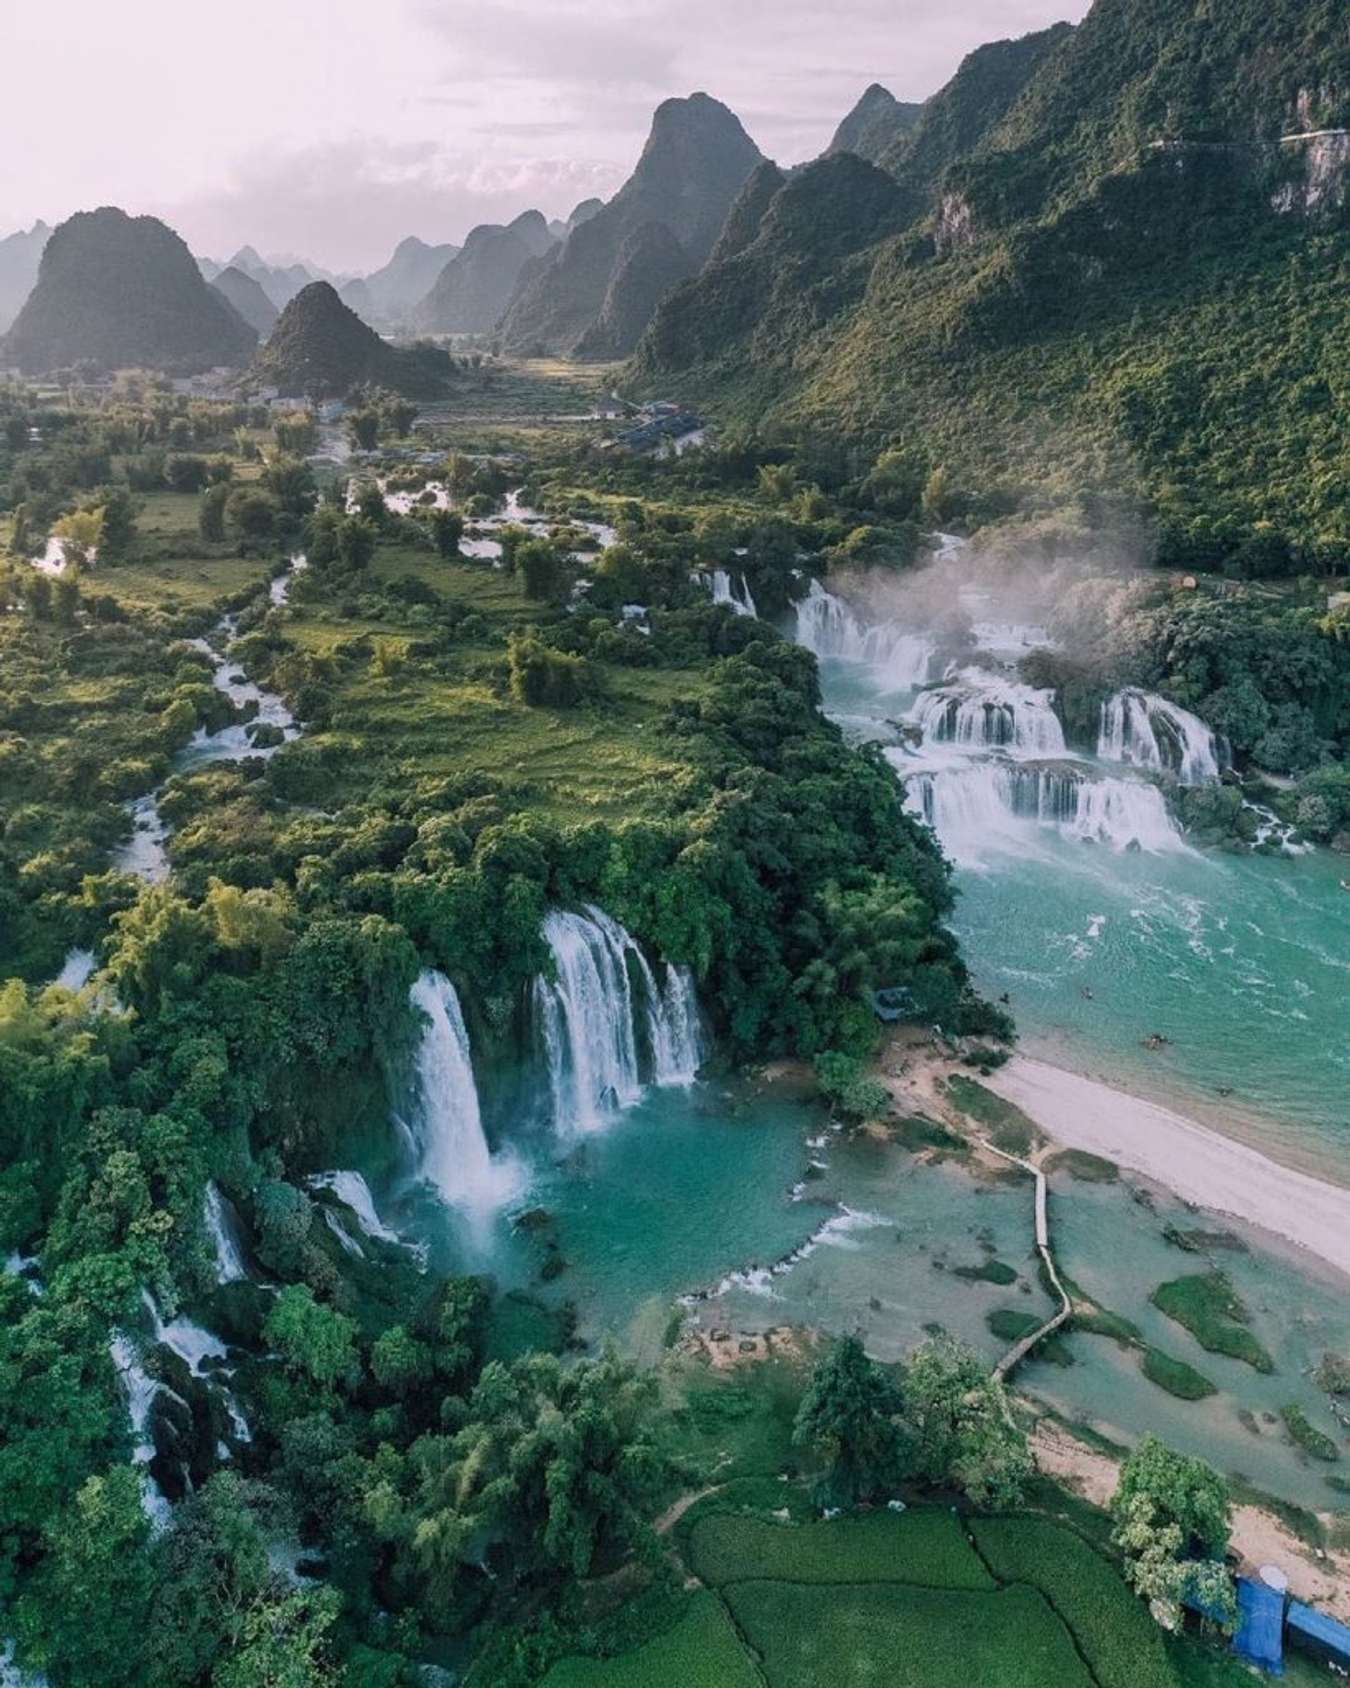 Cao Bằng: Cao Bằng là một tỉnh nằm ở phía đông bắc Việt Nam với nhiều thắng cảnh đẹp. Những rặng núi, những thác nước đổ xuống và những khu rừng bạt ngàn đang chờ bạn khám phá và tận hưởng.